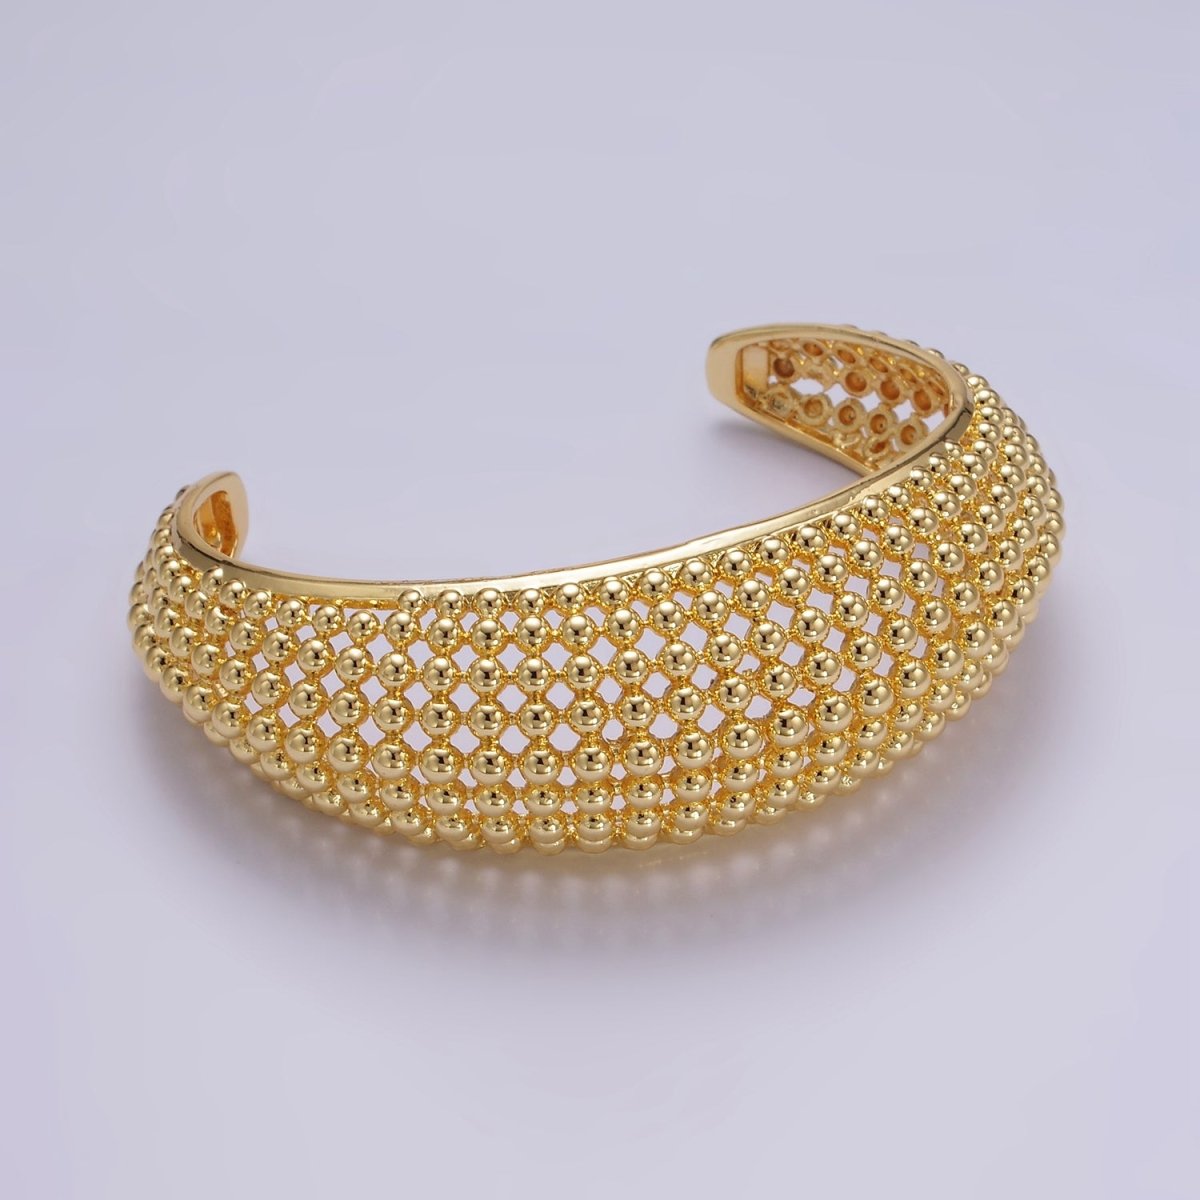 24K Gold Filled Beaded Bubble Wide Open Band Cuff Bracelet | WA - 2529 - DLUXCA